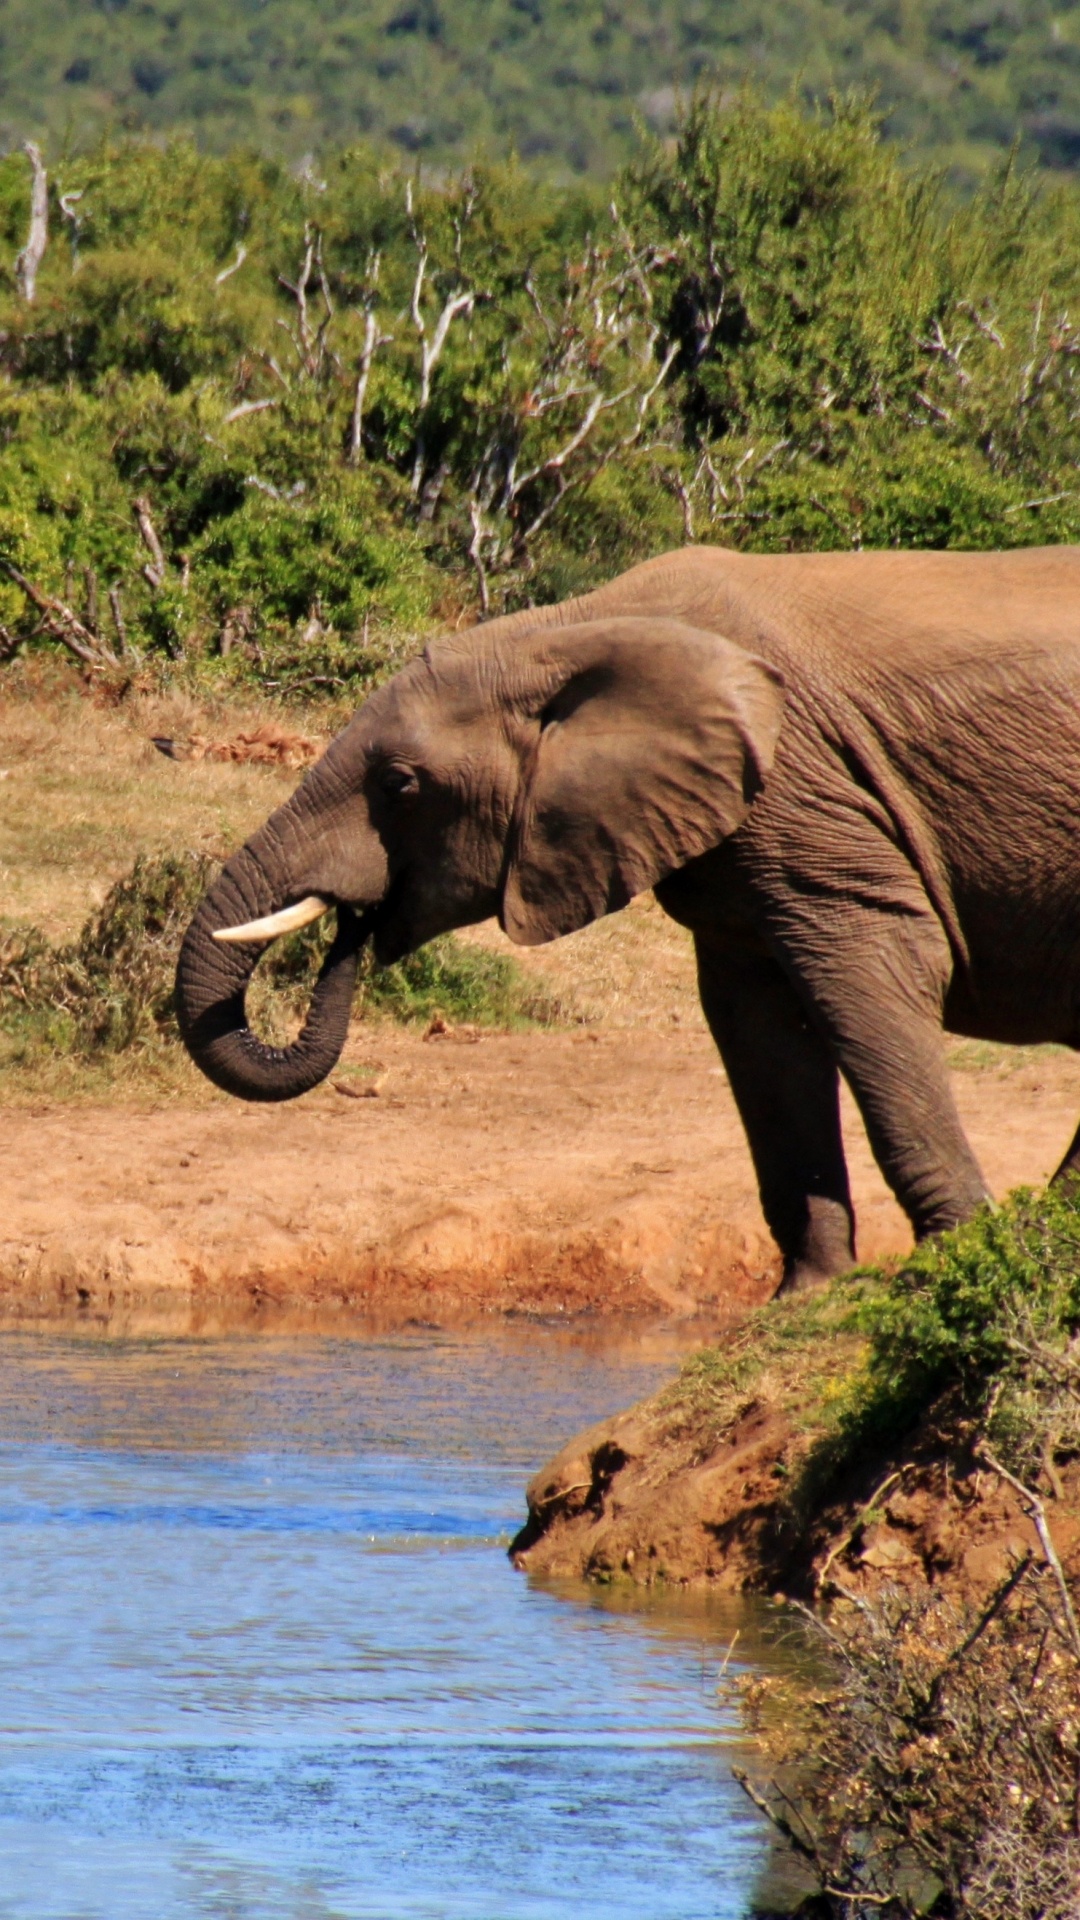 野生动物, 大象和猛犸象, 陆地动物, 非洲象, 印度大象 壁纸 1080x1920 允许